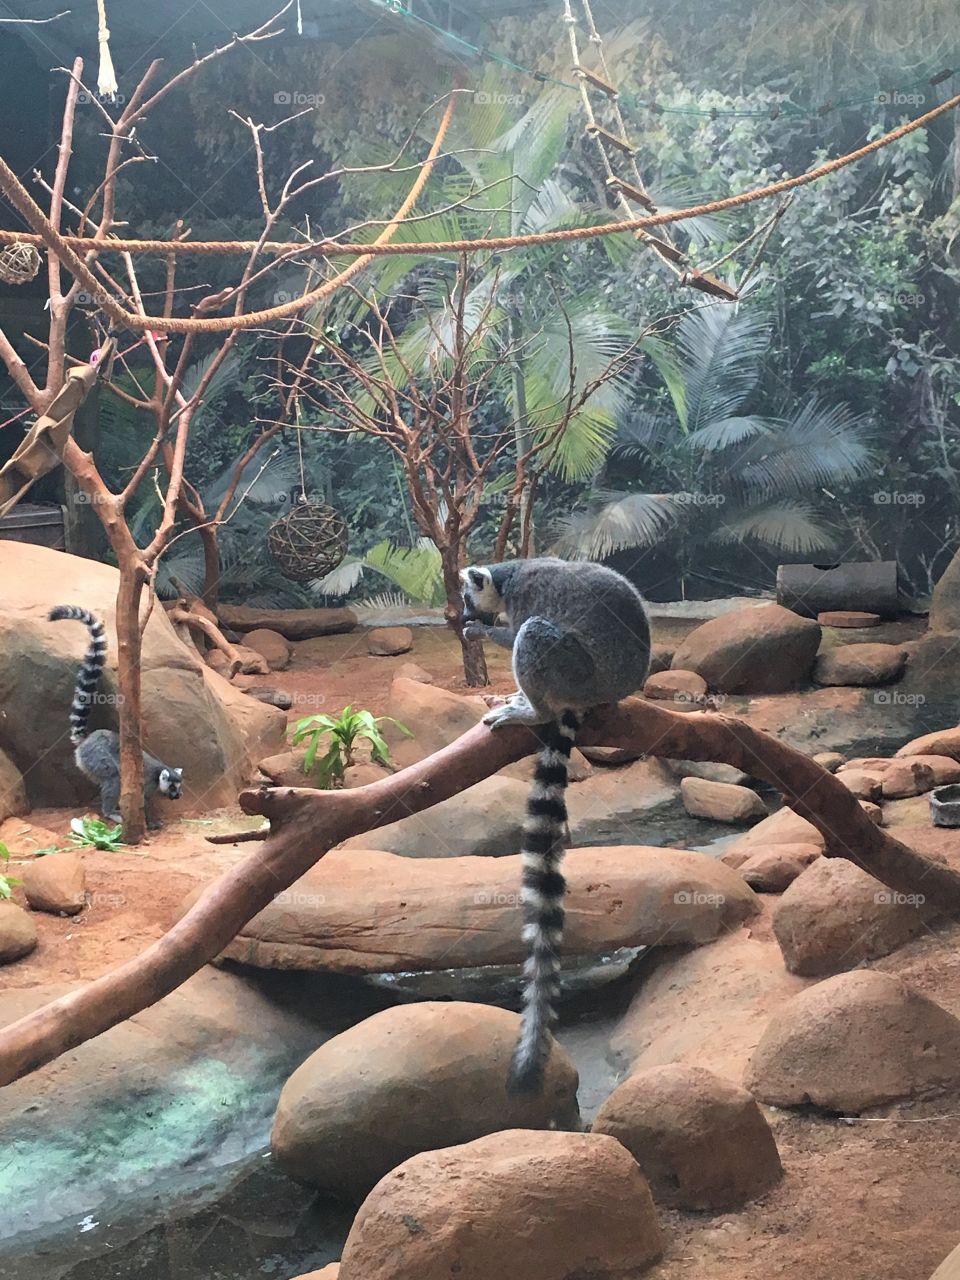 Lémure de cauda anelada